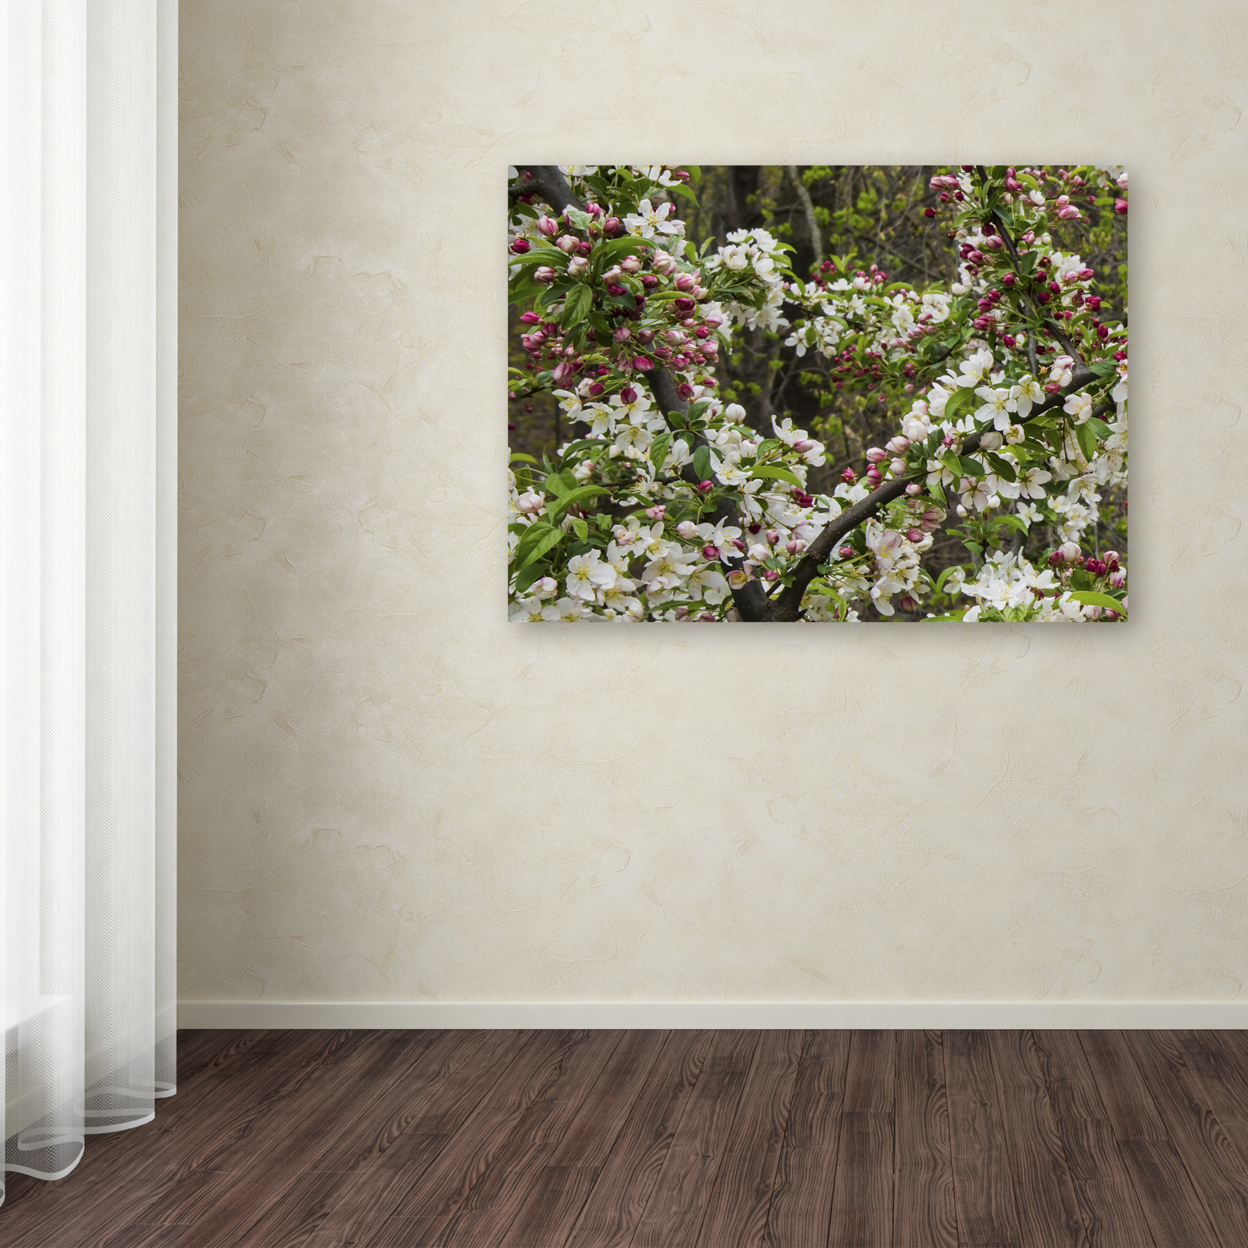 Kurt Shaffer 'Apple Blossoms II' Canvas Art